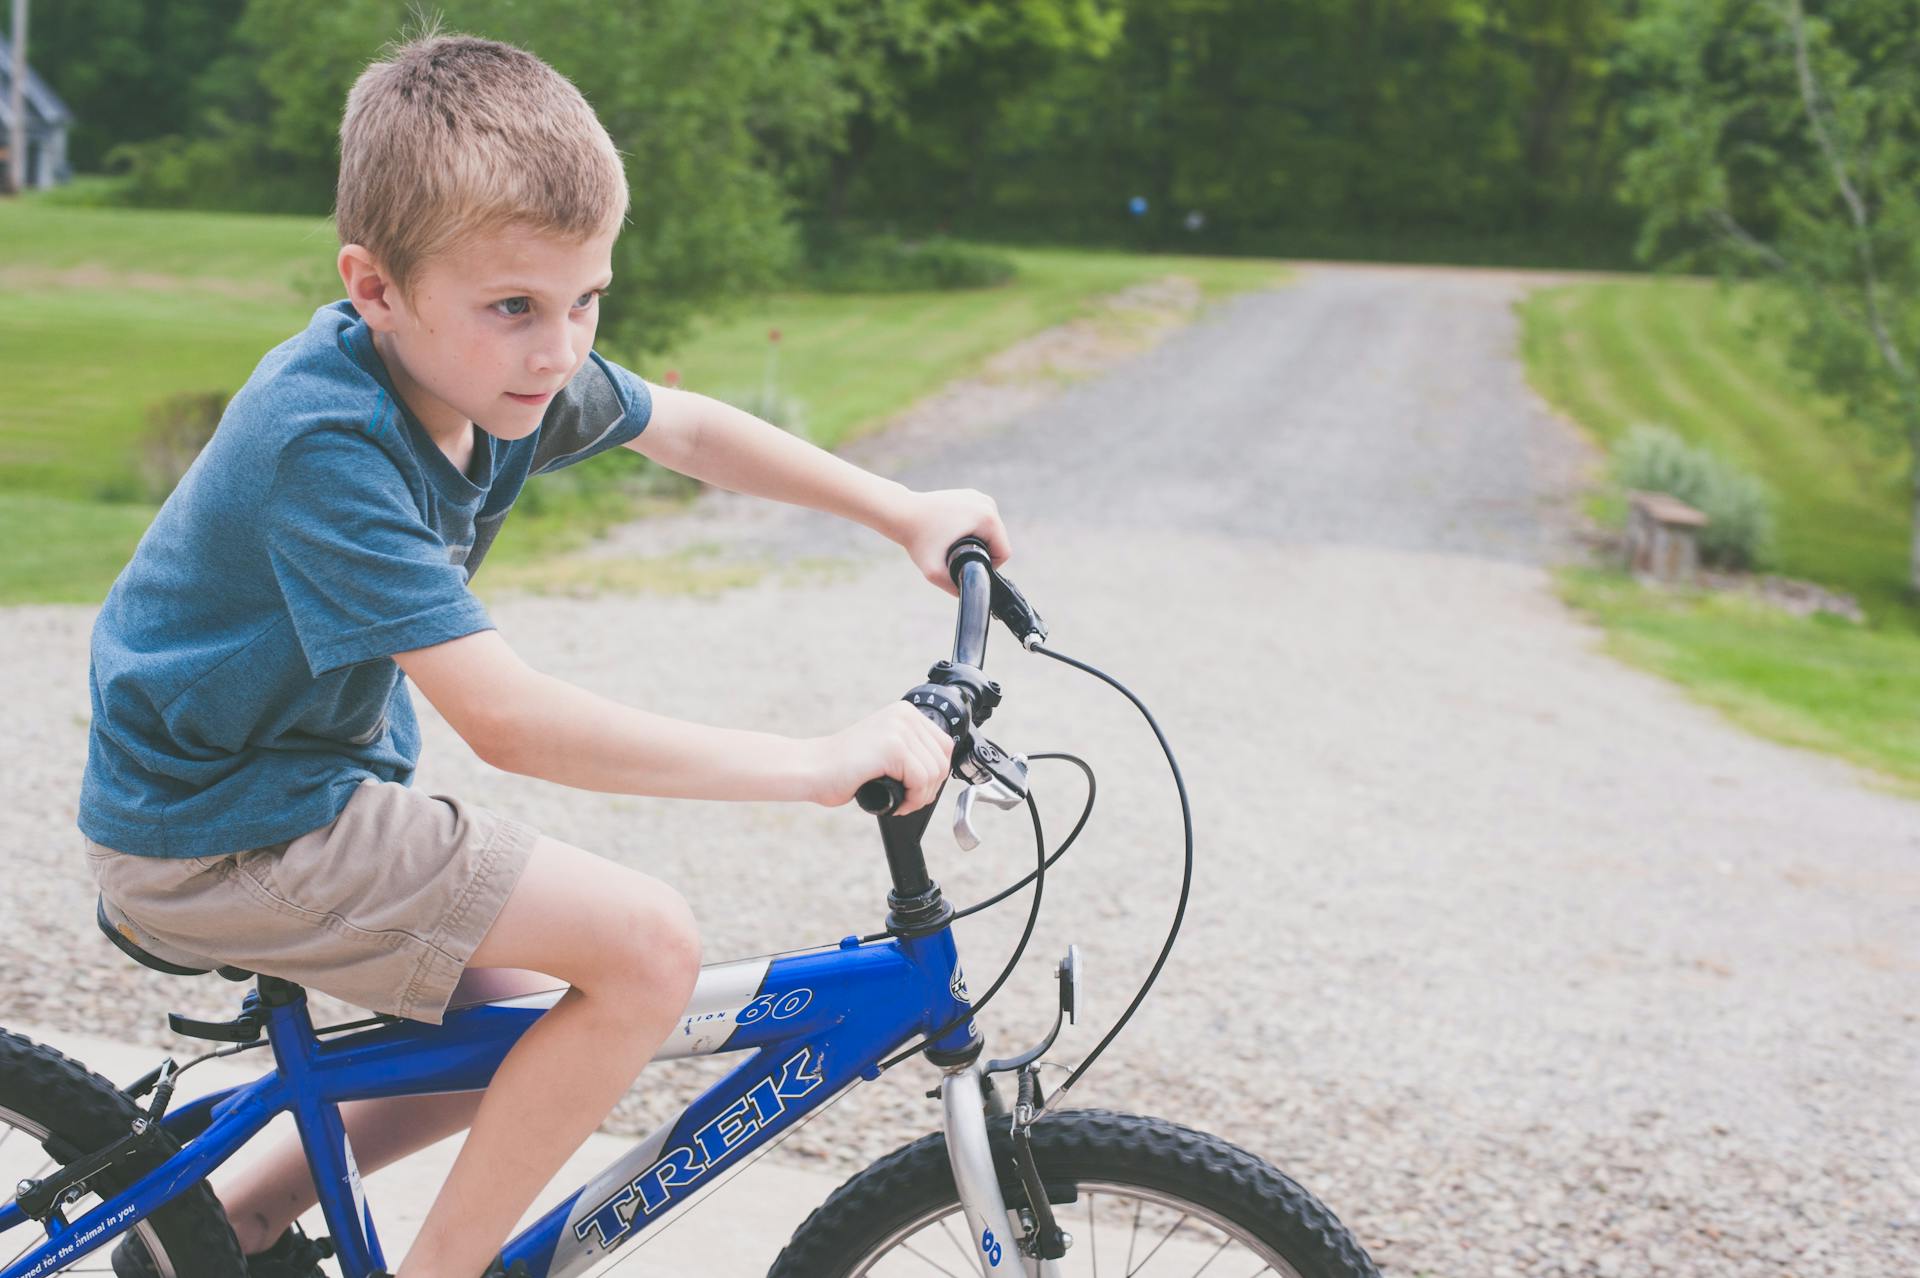 Junge fährt auf einem blauen Fahrrad | Quelle: Pexels